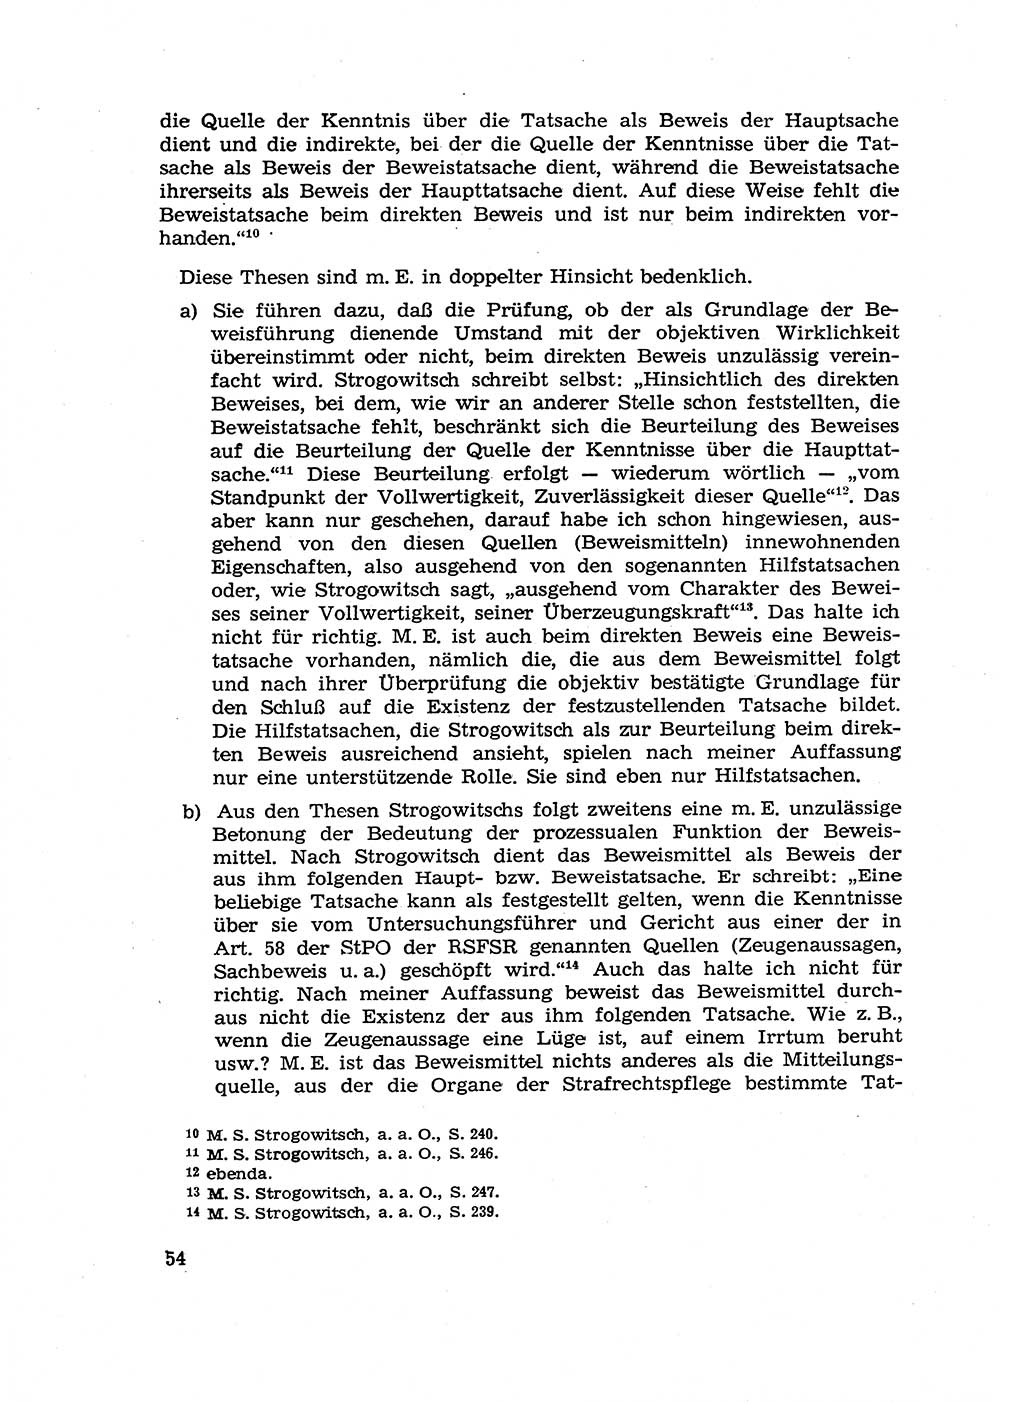 Fragen des Beweisrechts im Strafprozess [Deutsche Demokratische Republik (DDR)] 1956, Seite 54 (Fr. BeweisR. Str.-Proz. DDR 1956, S. 54)